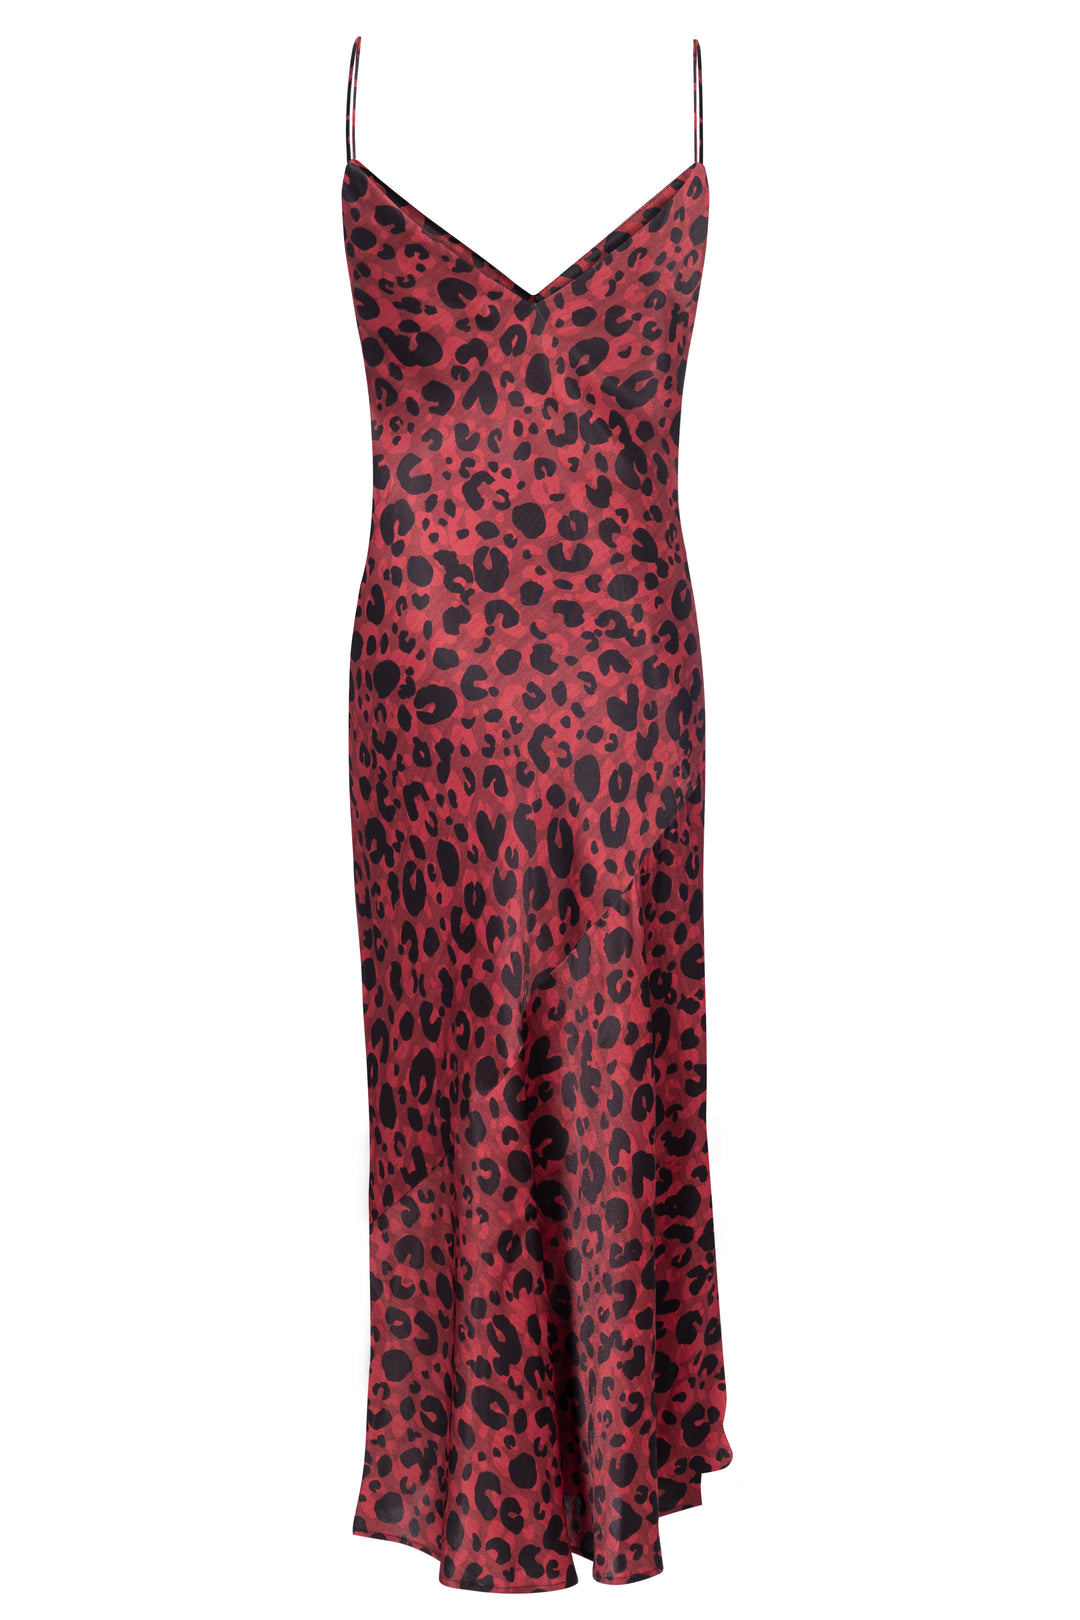 Leopard Print Slip Dress - SERRANO